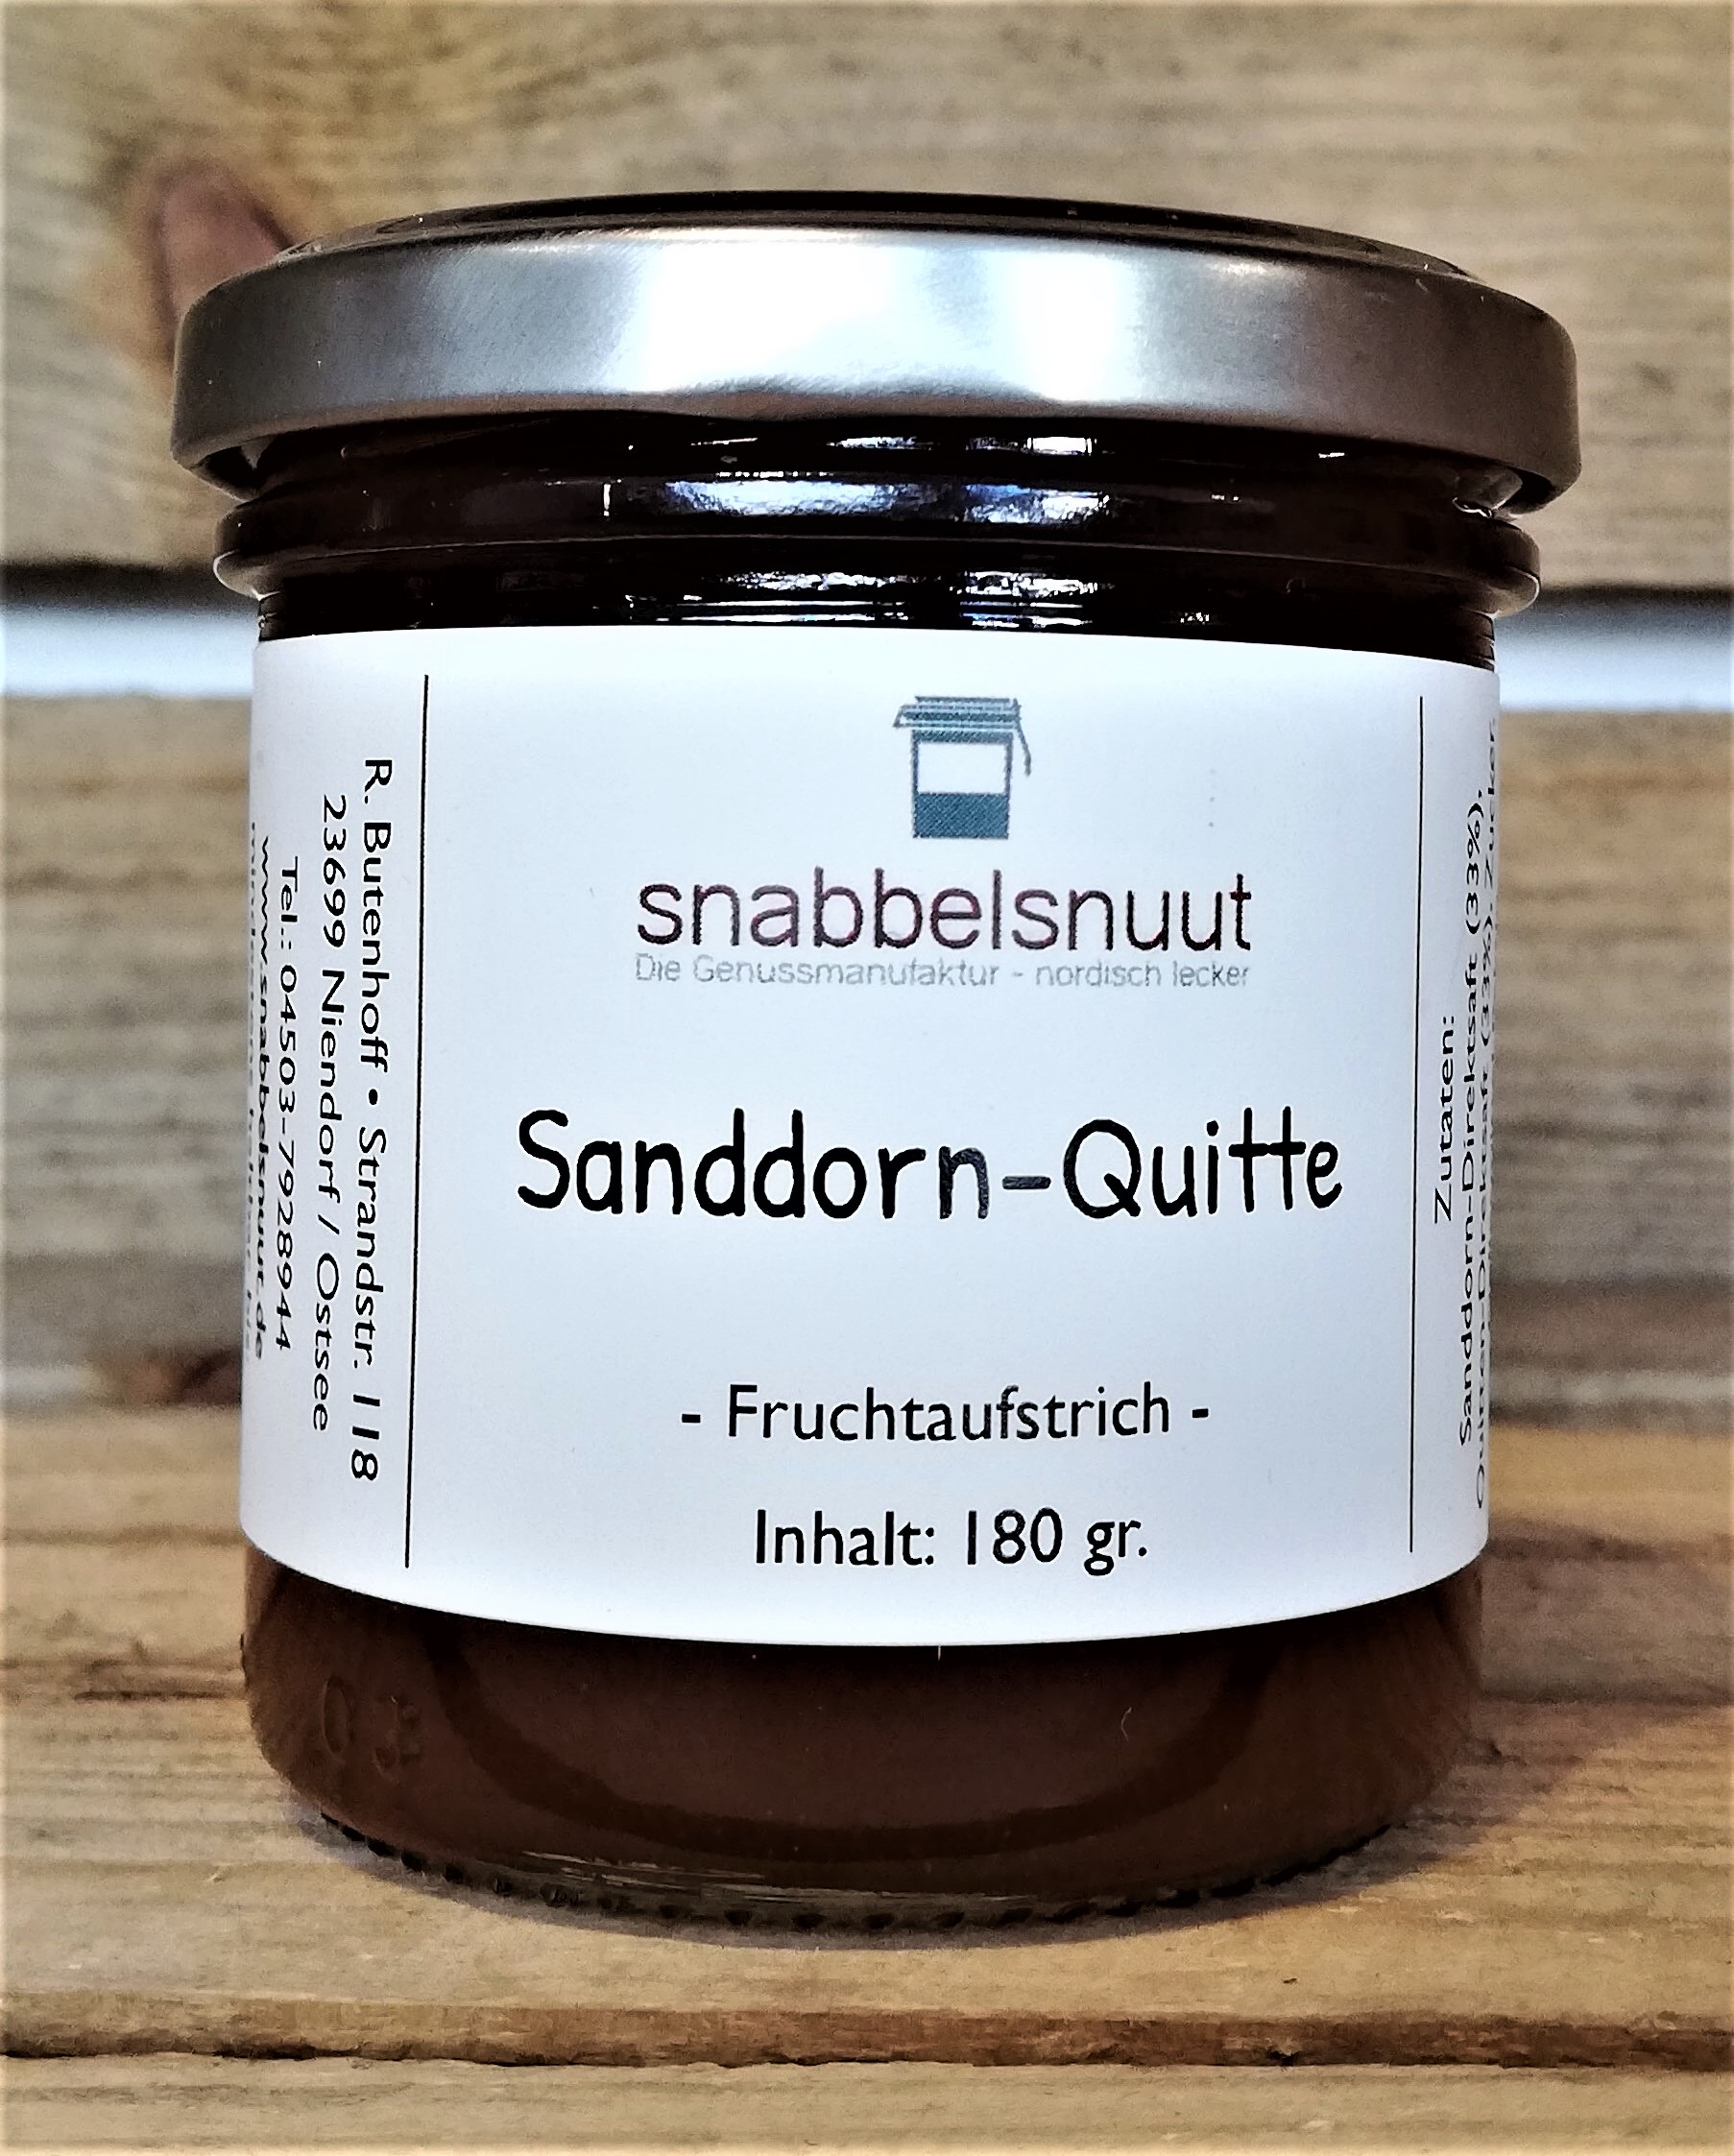 Sanddorn-Quitte